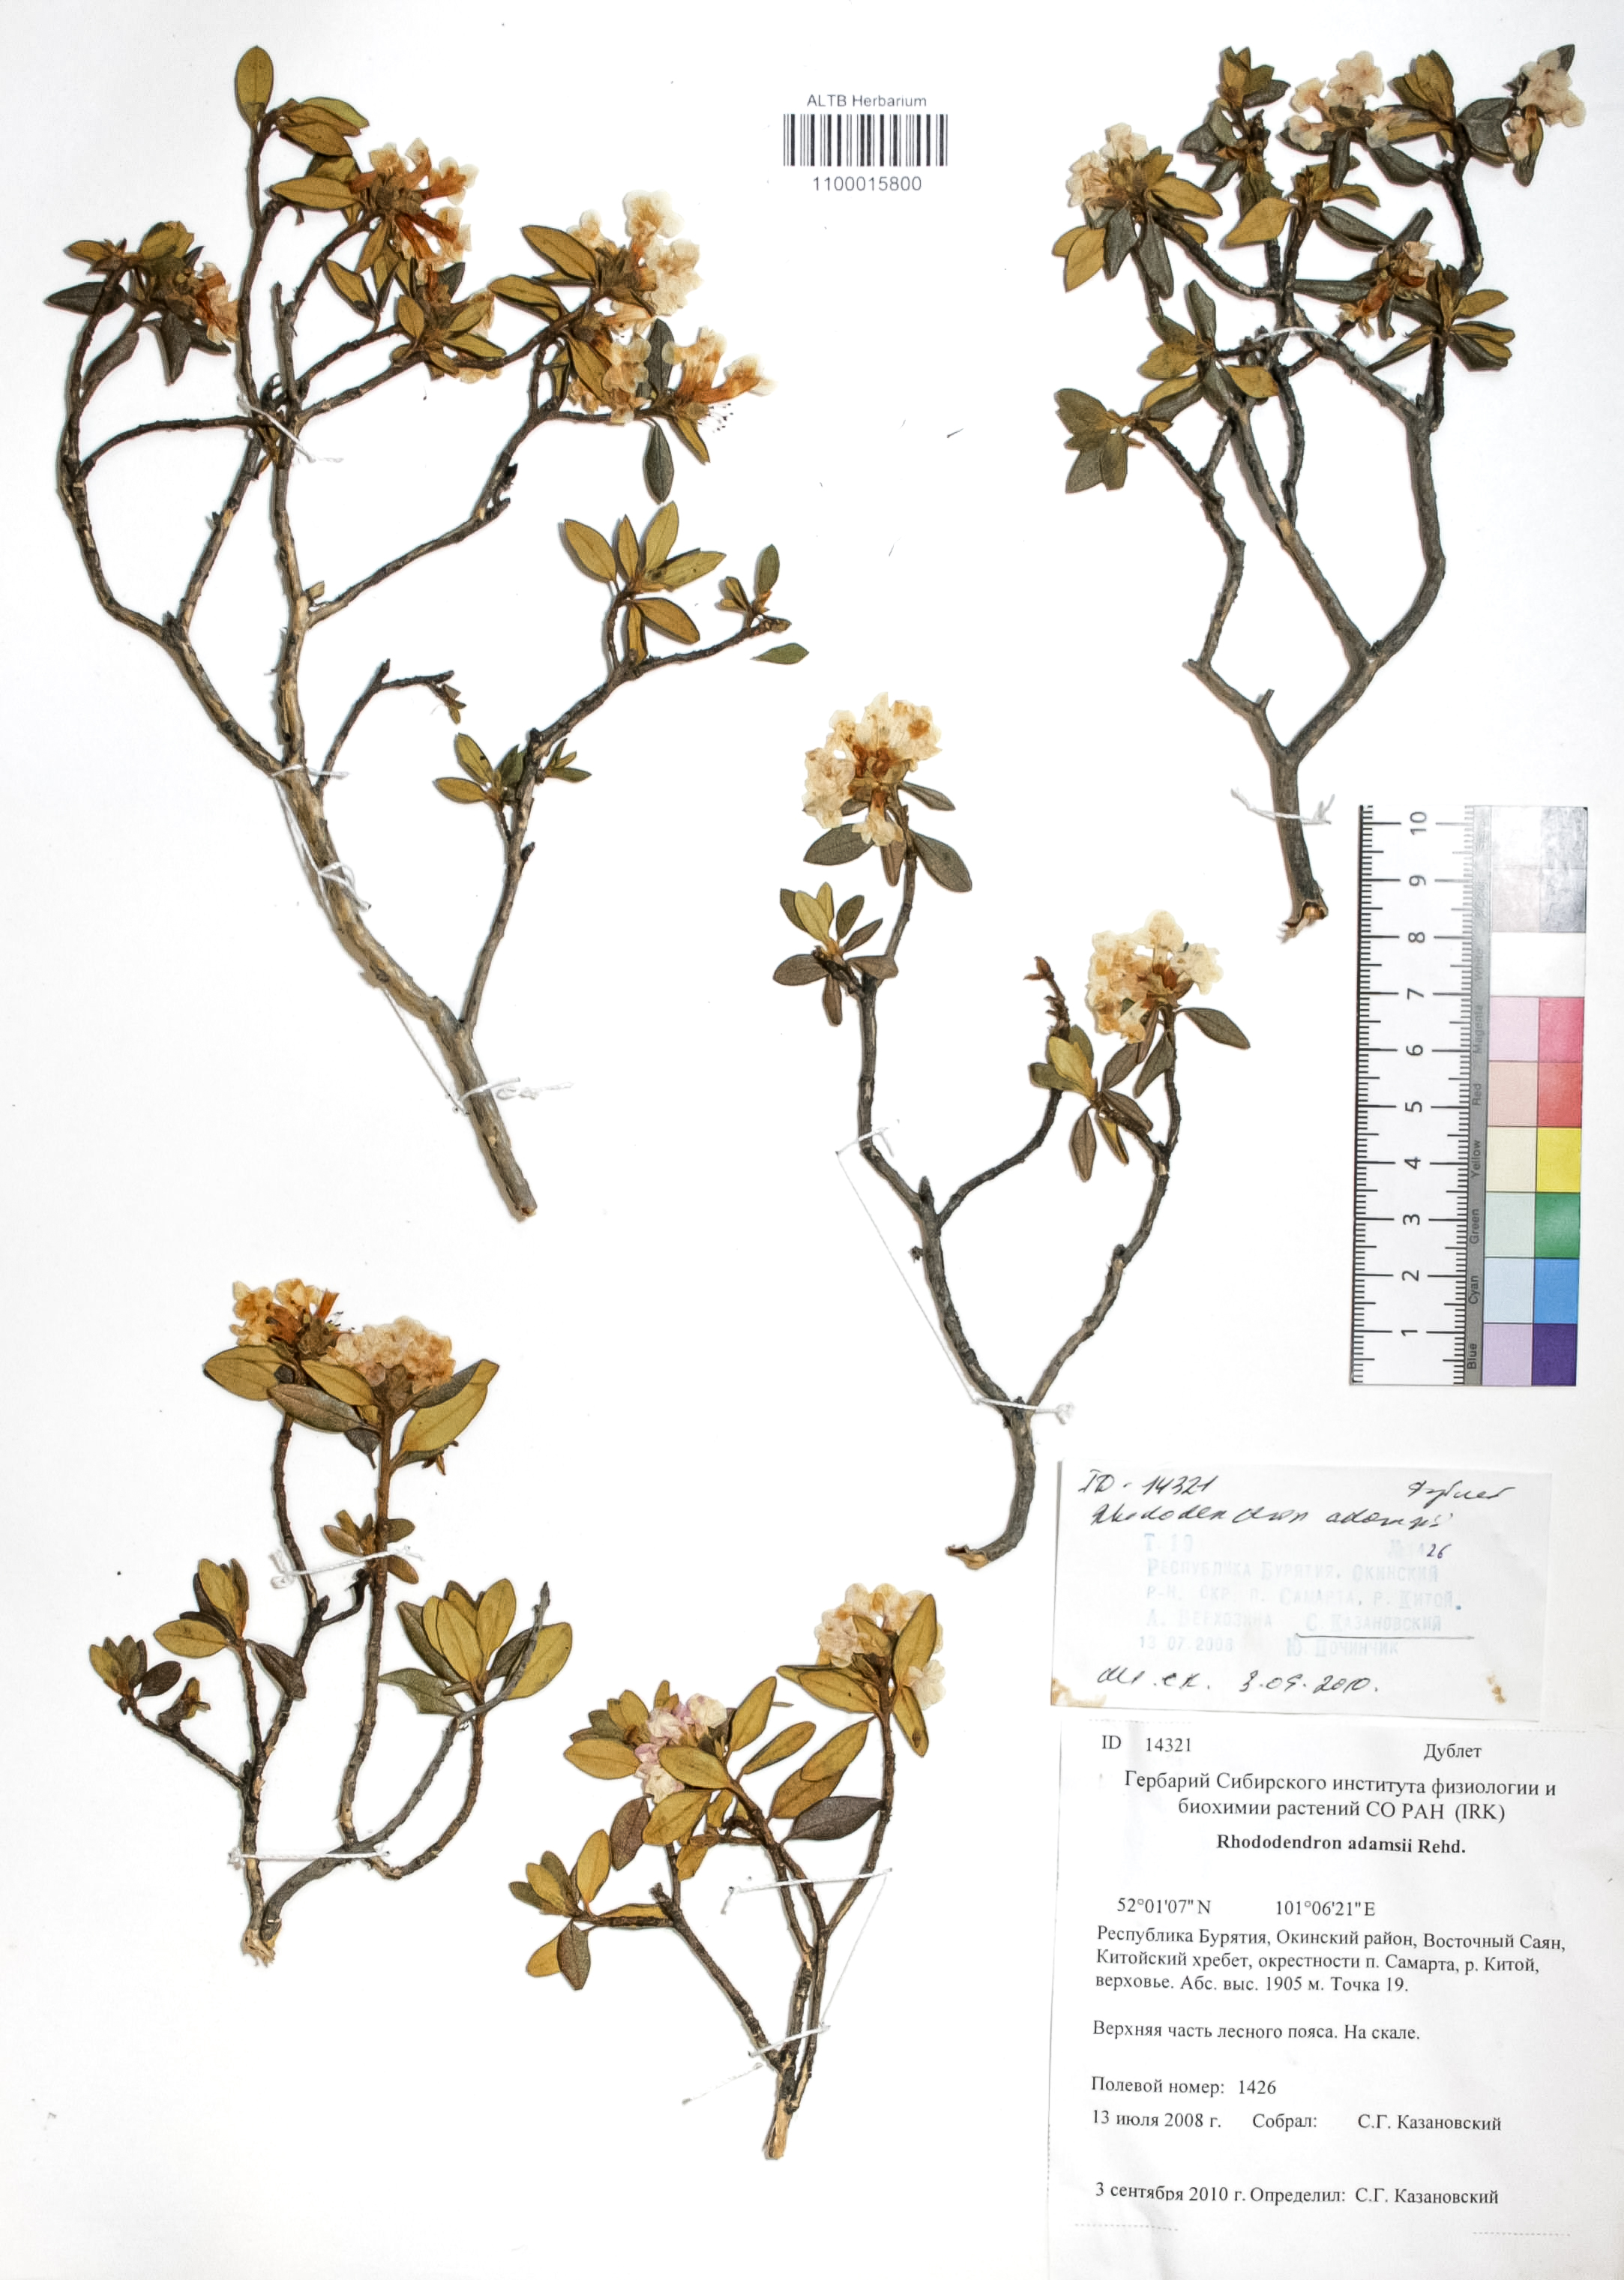 Rhododendron adamsii Rehder